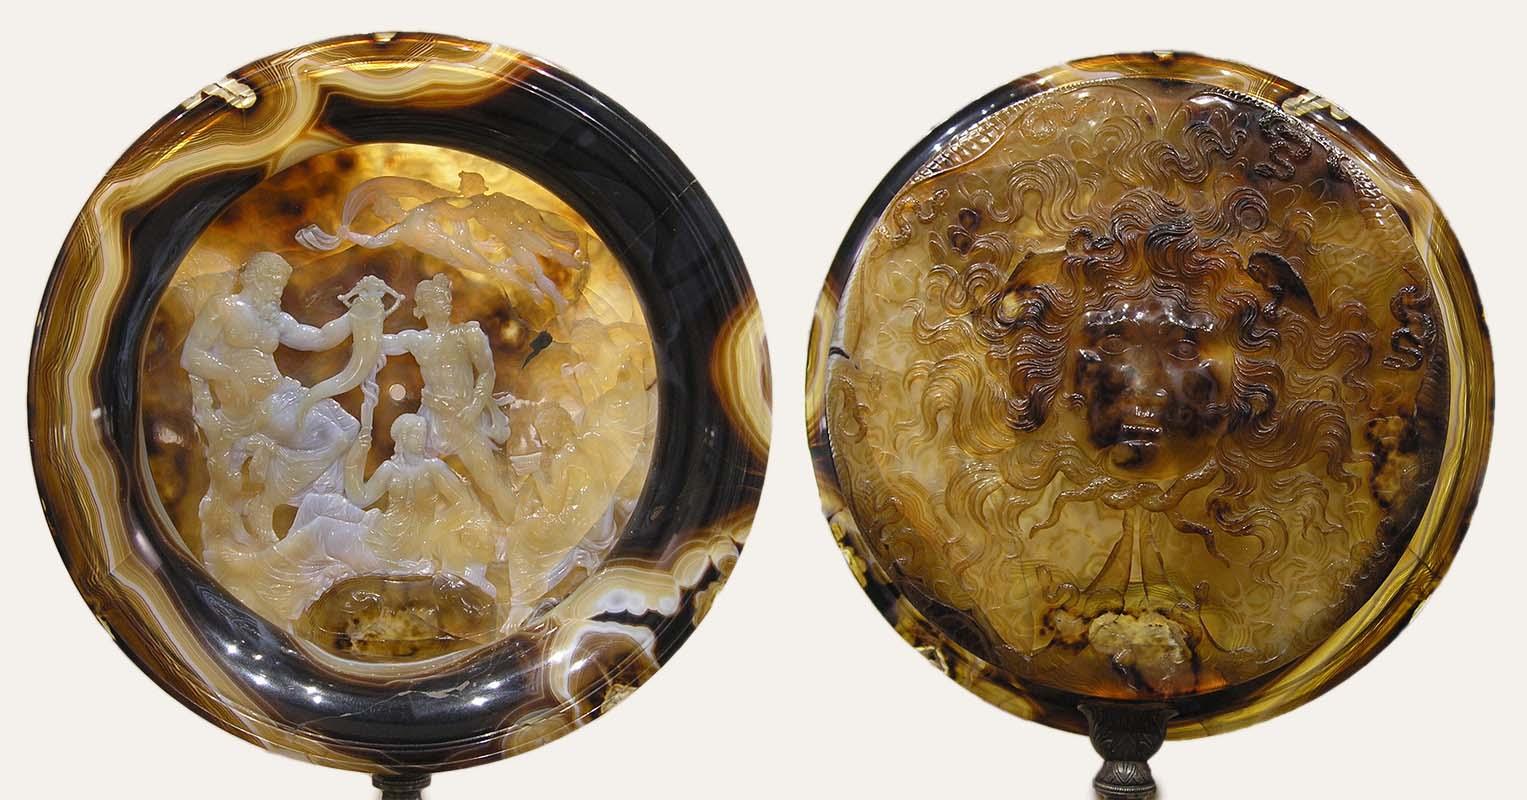 Tazza Farnese, già nella collezione Barbo, oggi conservata presso il Museo Nazionale Archeologico di Napoli (recto e verso)
